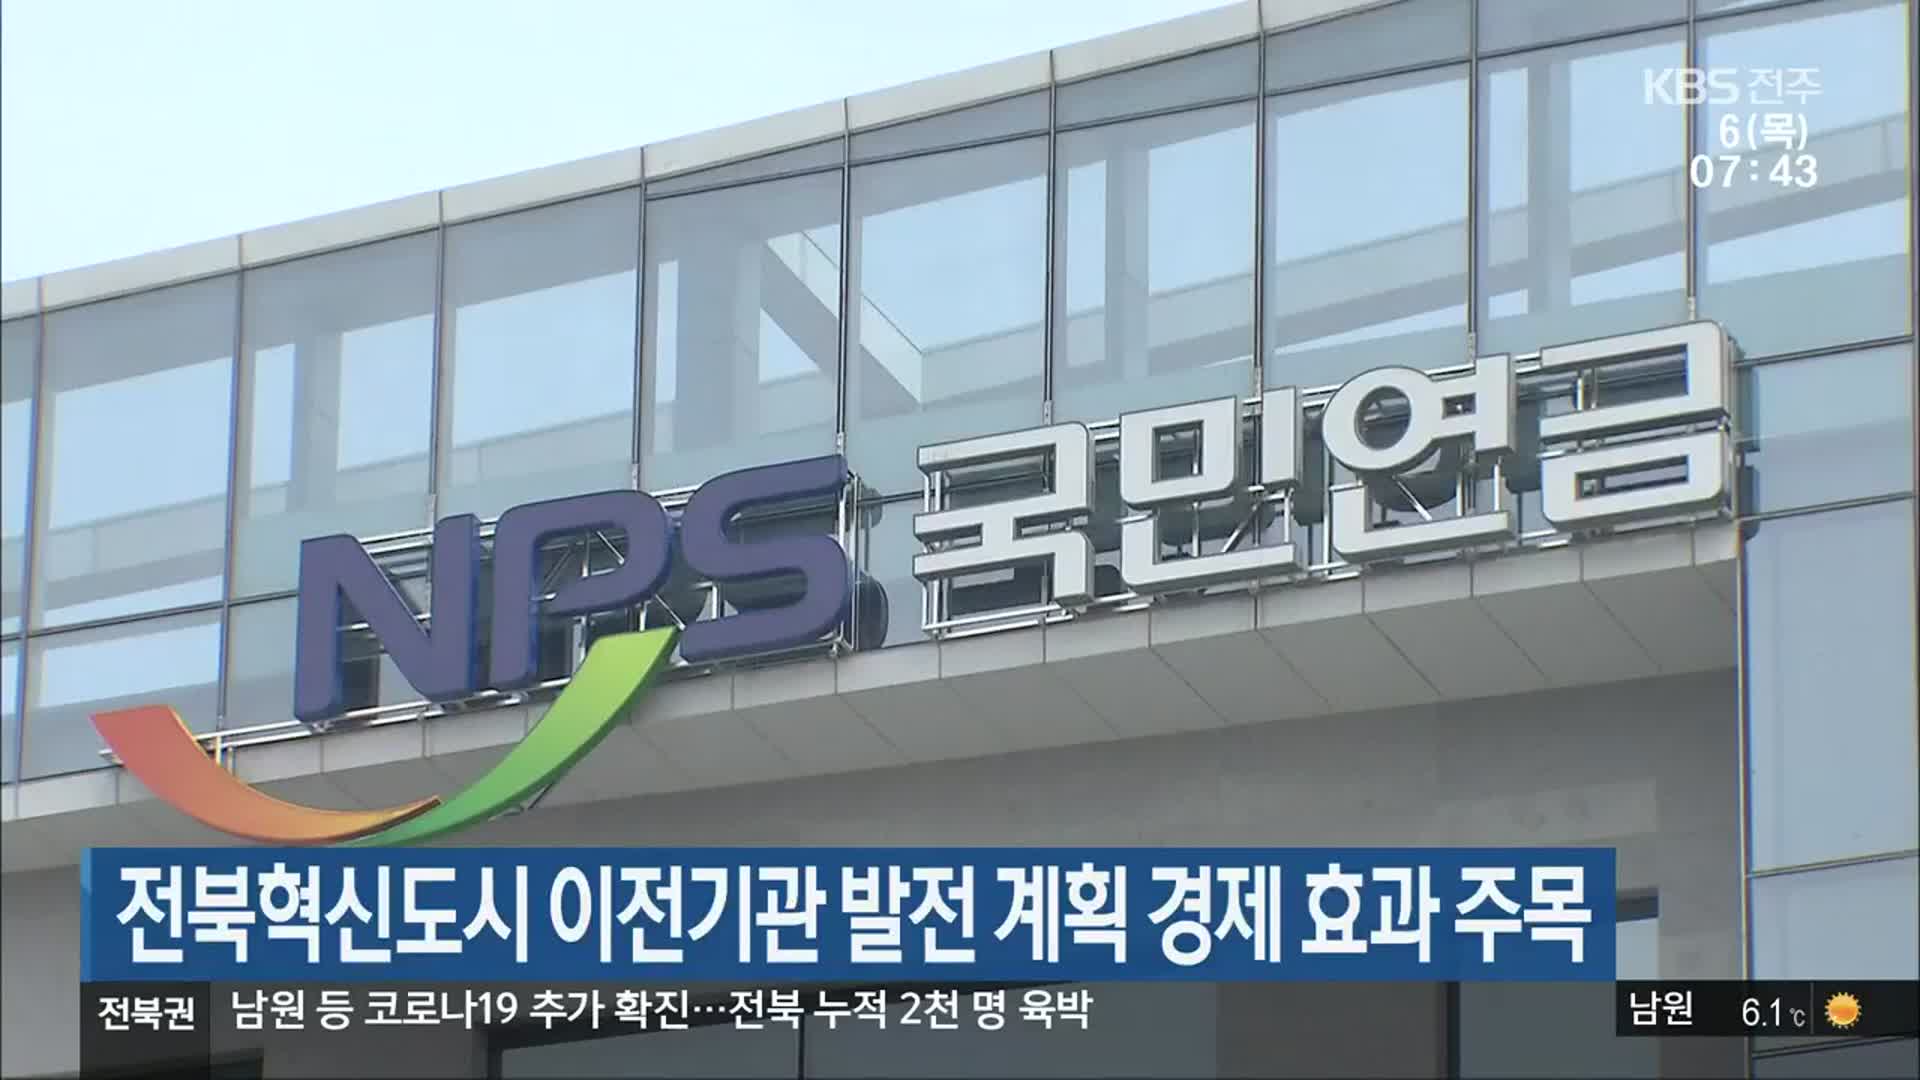 전북혁신도시 이전기관 발전 계획 경제 효과 주목